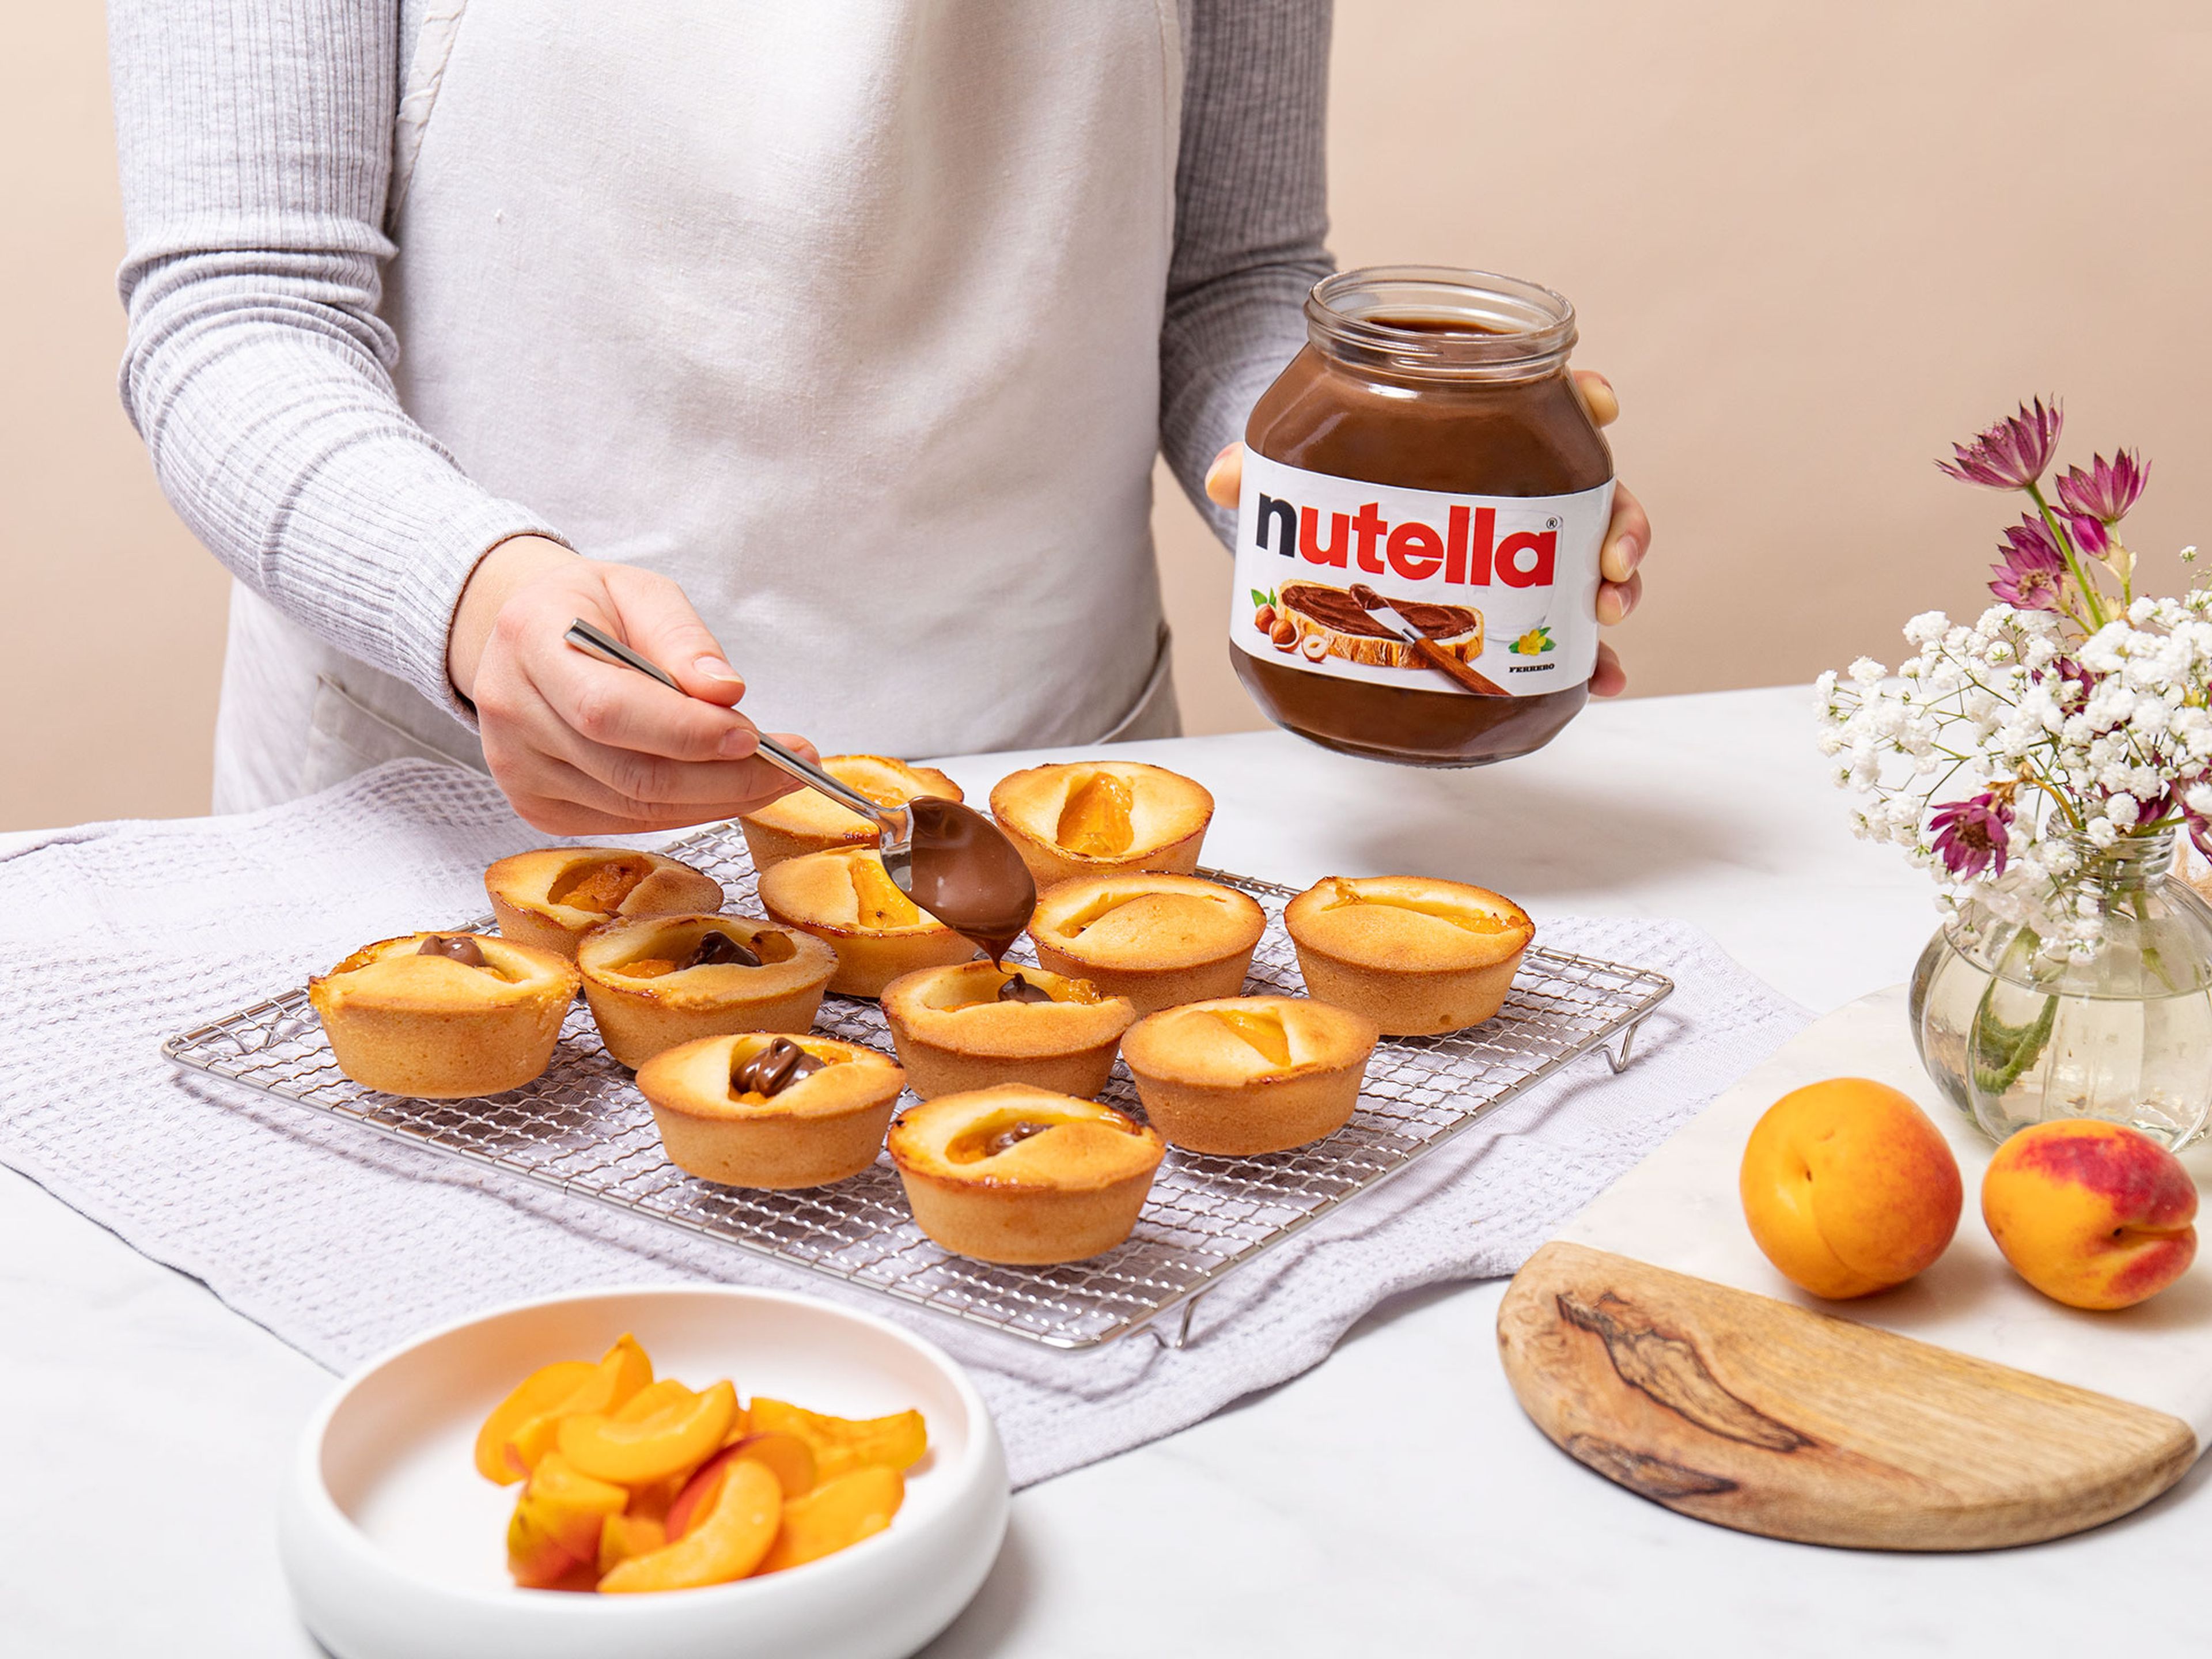 Die Muffins jeweils mit einem Klecks nutella® dekorieren und eine Aprikosenspalte auf die Creme setzen. Guten Appetit!